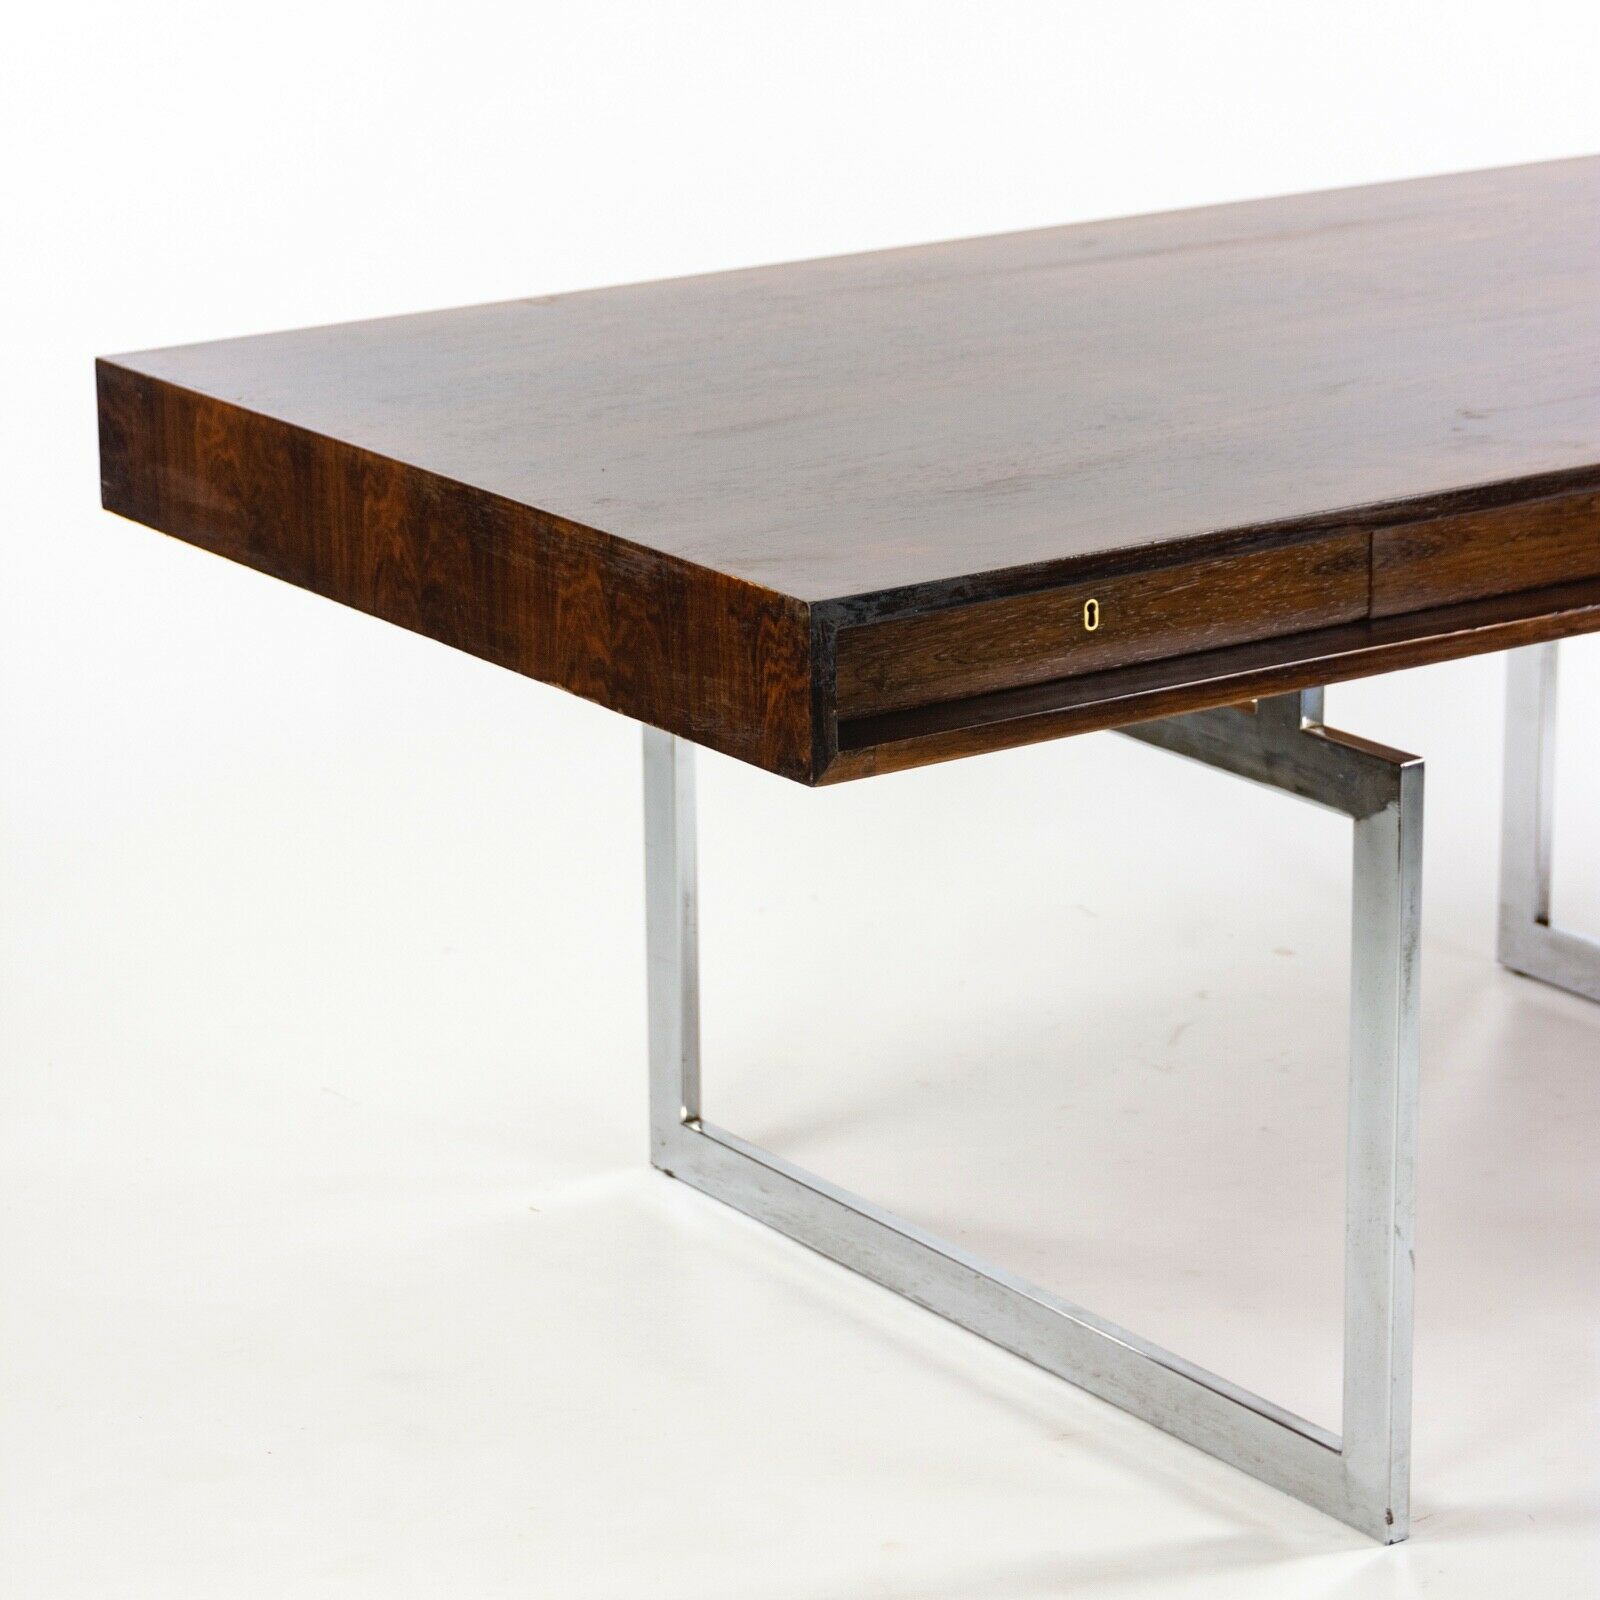 1959 4-Drawer Bodil Kjaer Desk for E. Pedersen & Son Brazilian Rosewood Made in Denmark